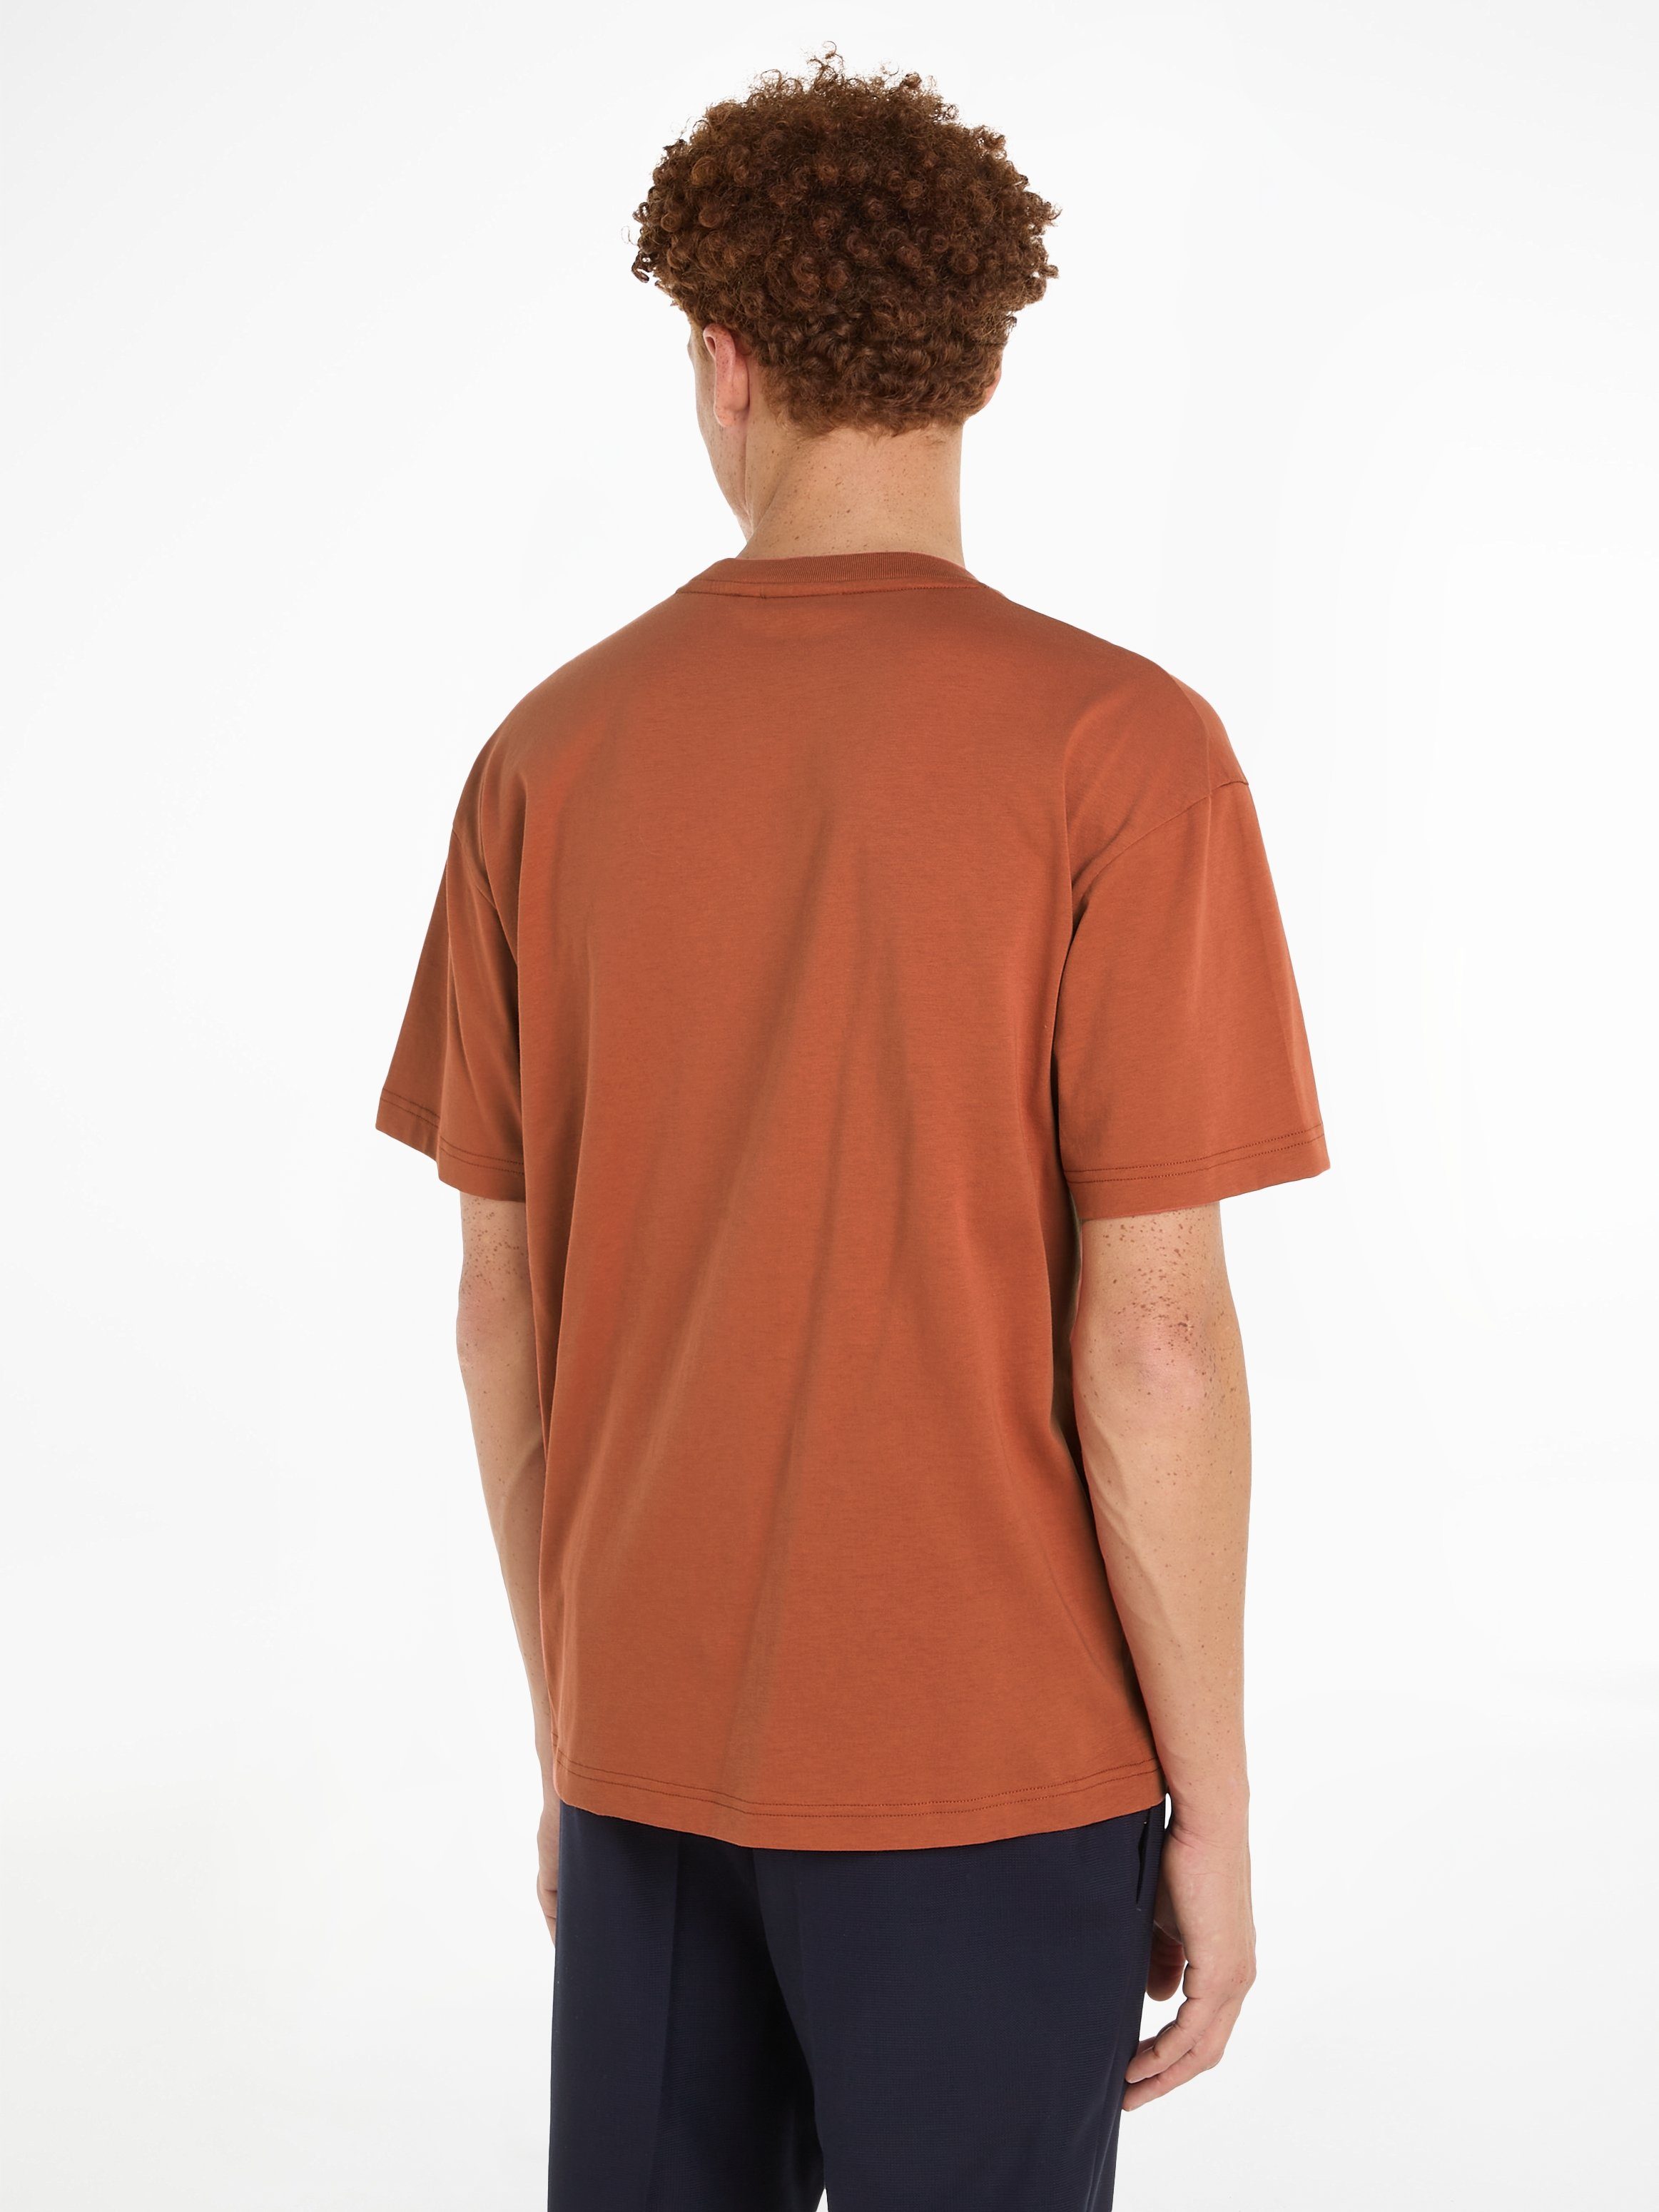 Calvin Klein Sun COMFORT aufgedrucktem mit HERO Markenlabel Copper T-SHIRT T-Shirt LOGO